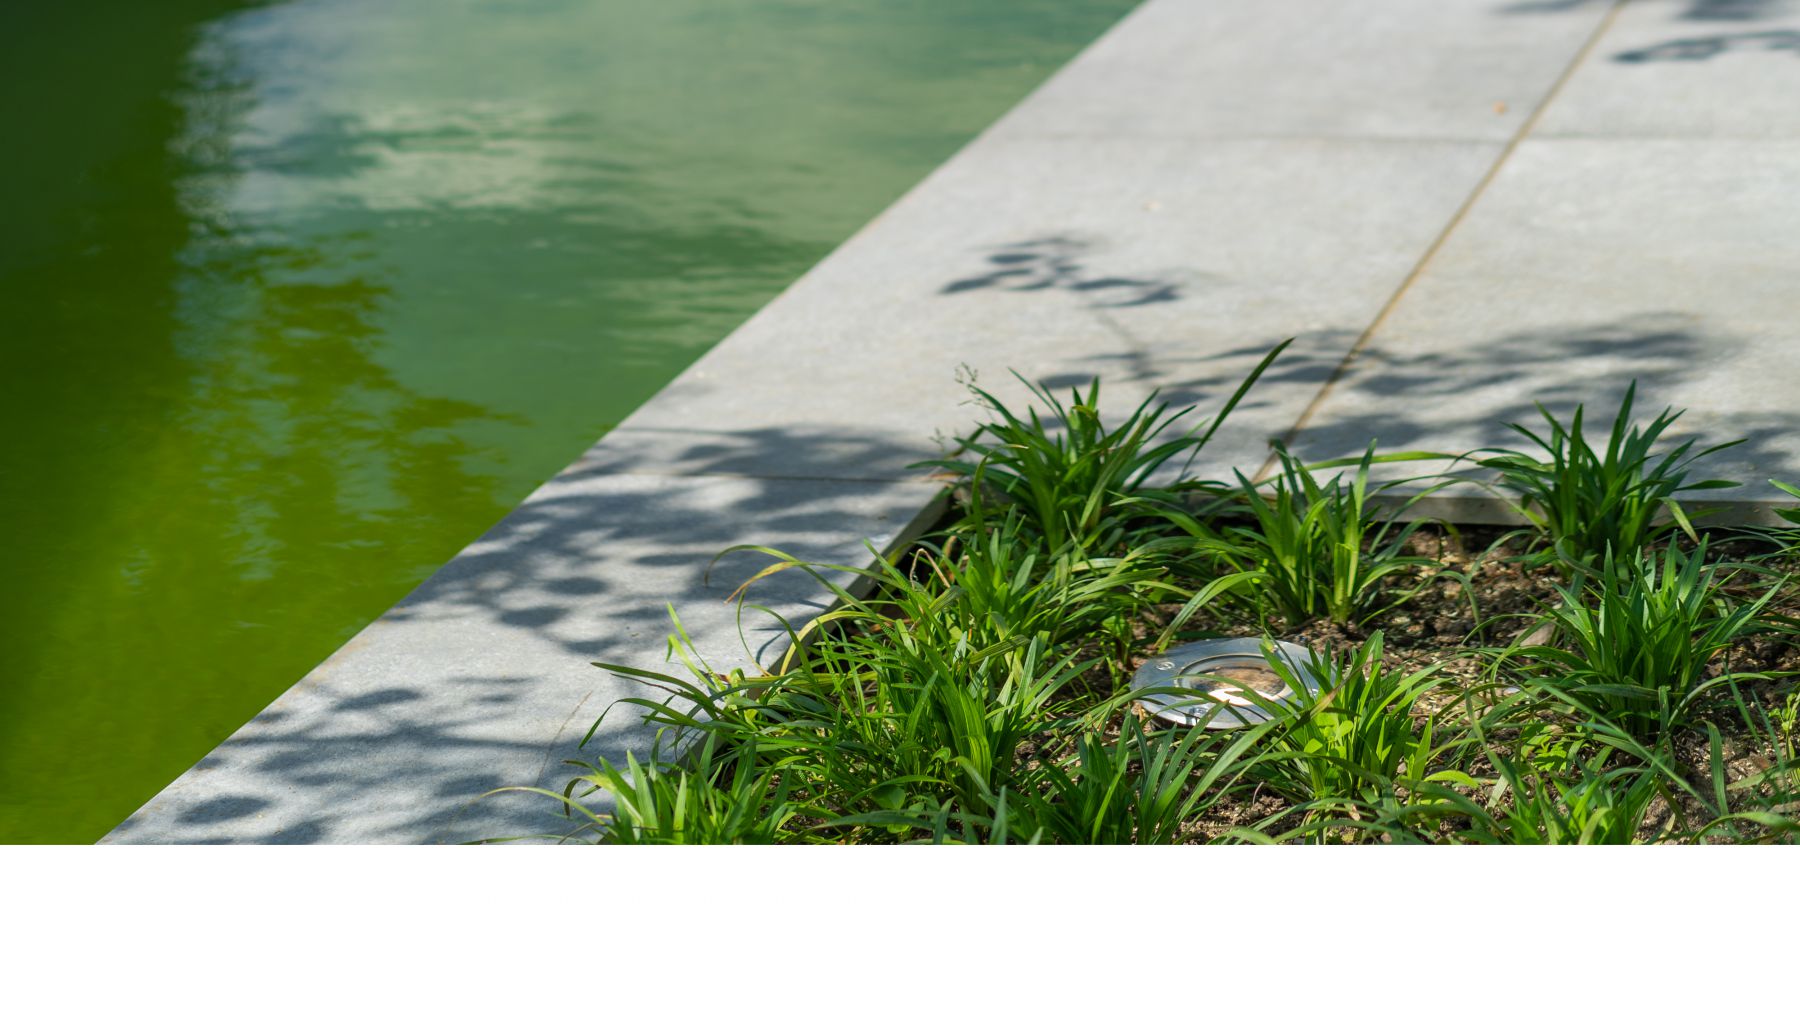 1.7 Lebendiges Grün und elegantes Grau - Designgarten mit Pool in Rhede